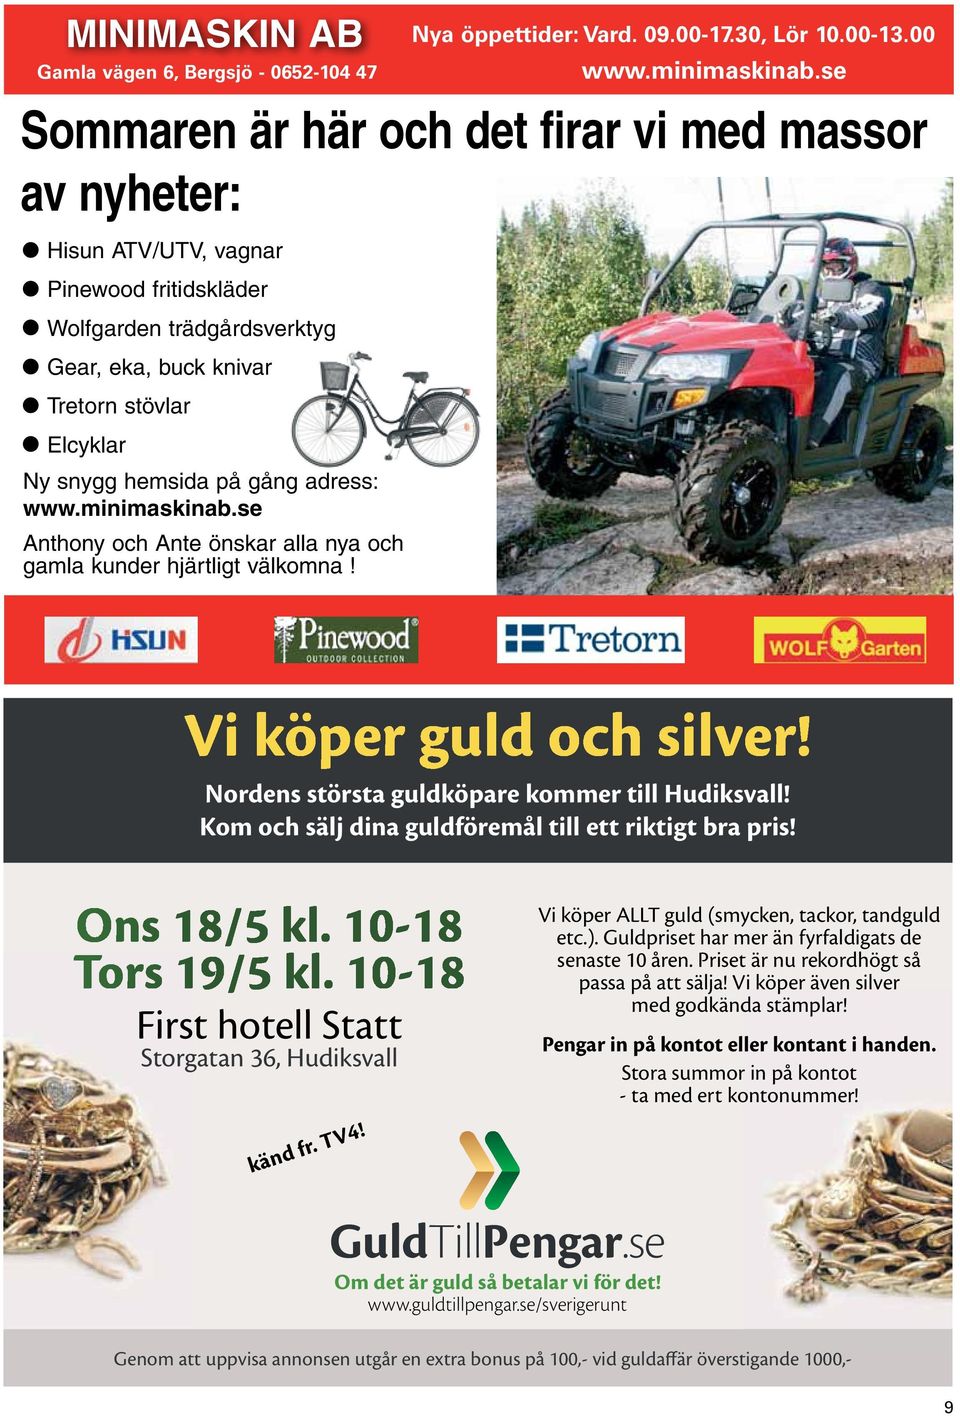 adress: www.miimaskiab.se Athoy och Ate öskar alla ya och gamla kuder hjärtligt välkoma! Vi köper guld och silver! Nordes största guldköpare kommer till Hudiksvall!